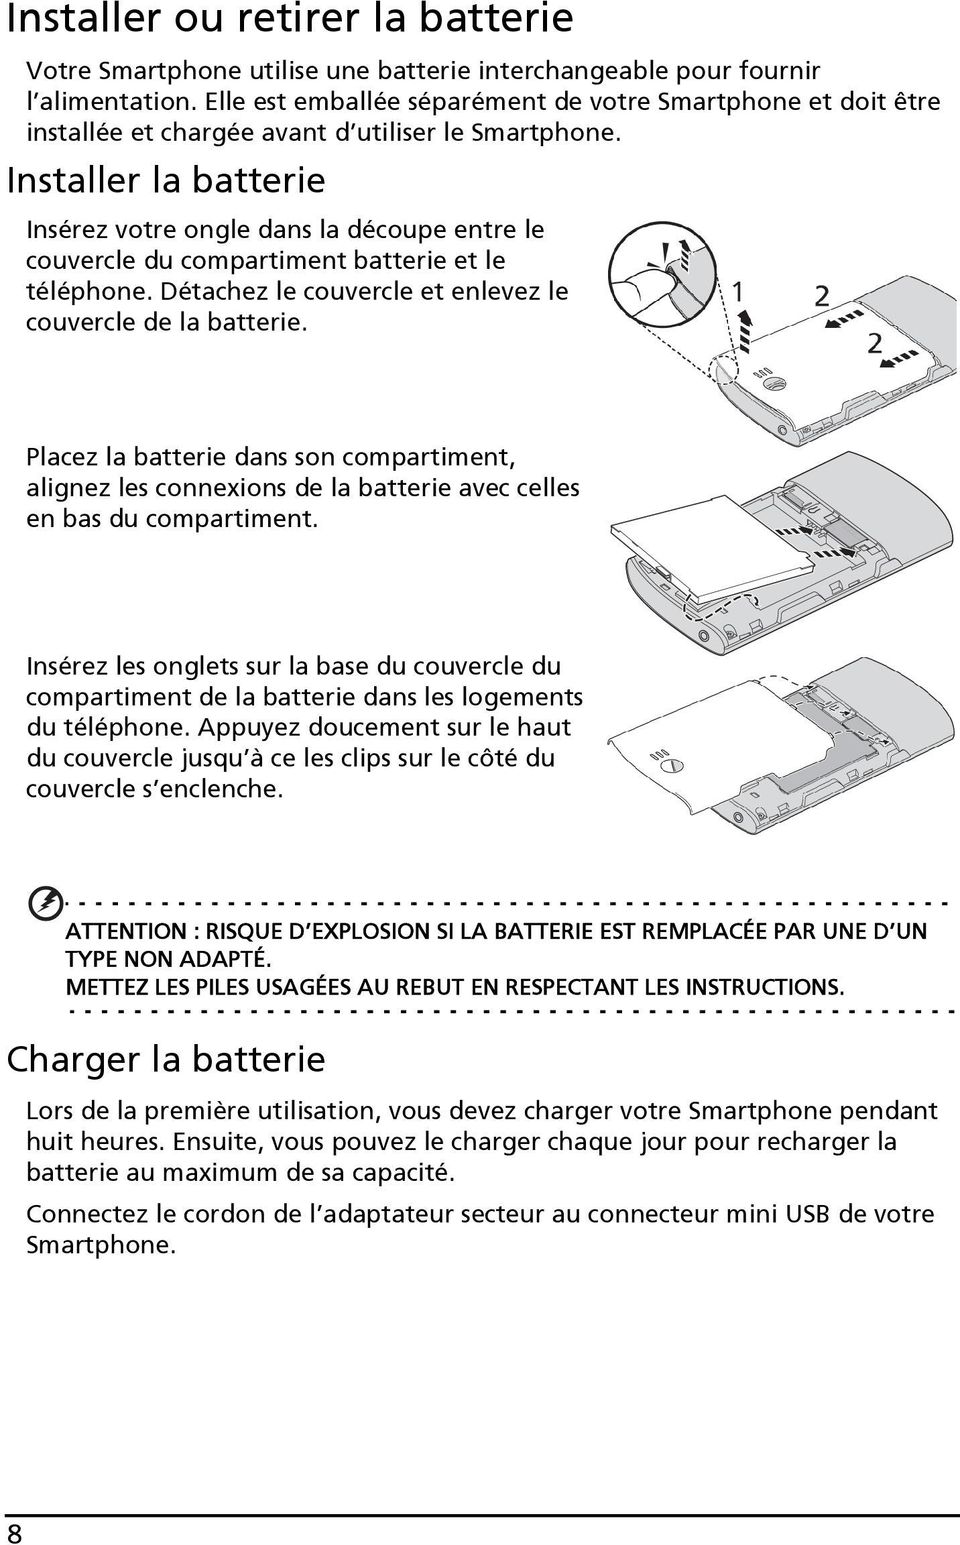 Installer la batterie Insérez votre ongle dans la découpe entre le couvercle du compartiment batterie et le téléphone. Détachez le couvercle et enlevez le couvercle de la batterie.